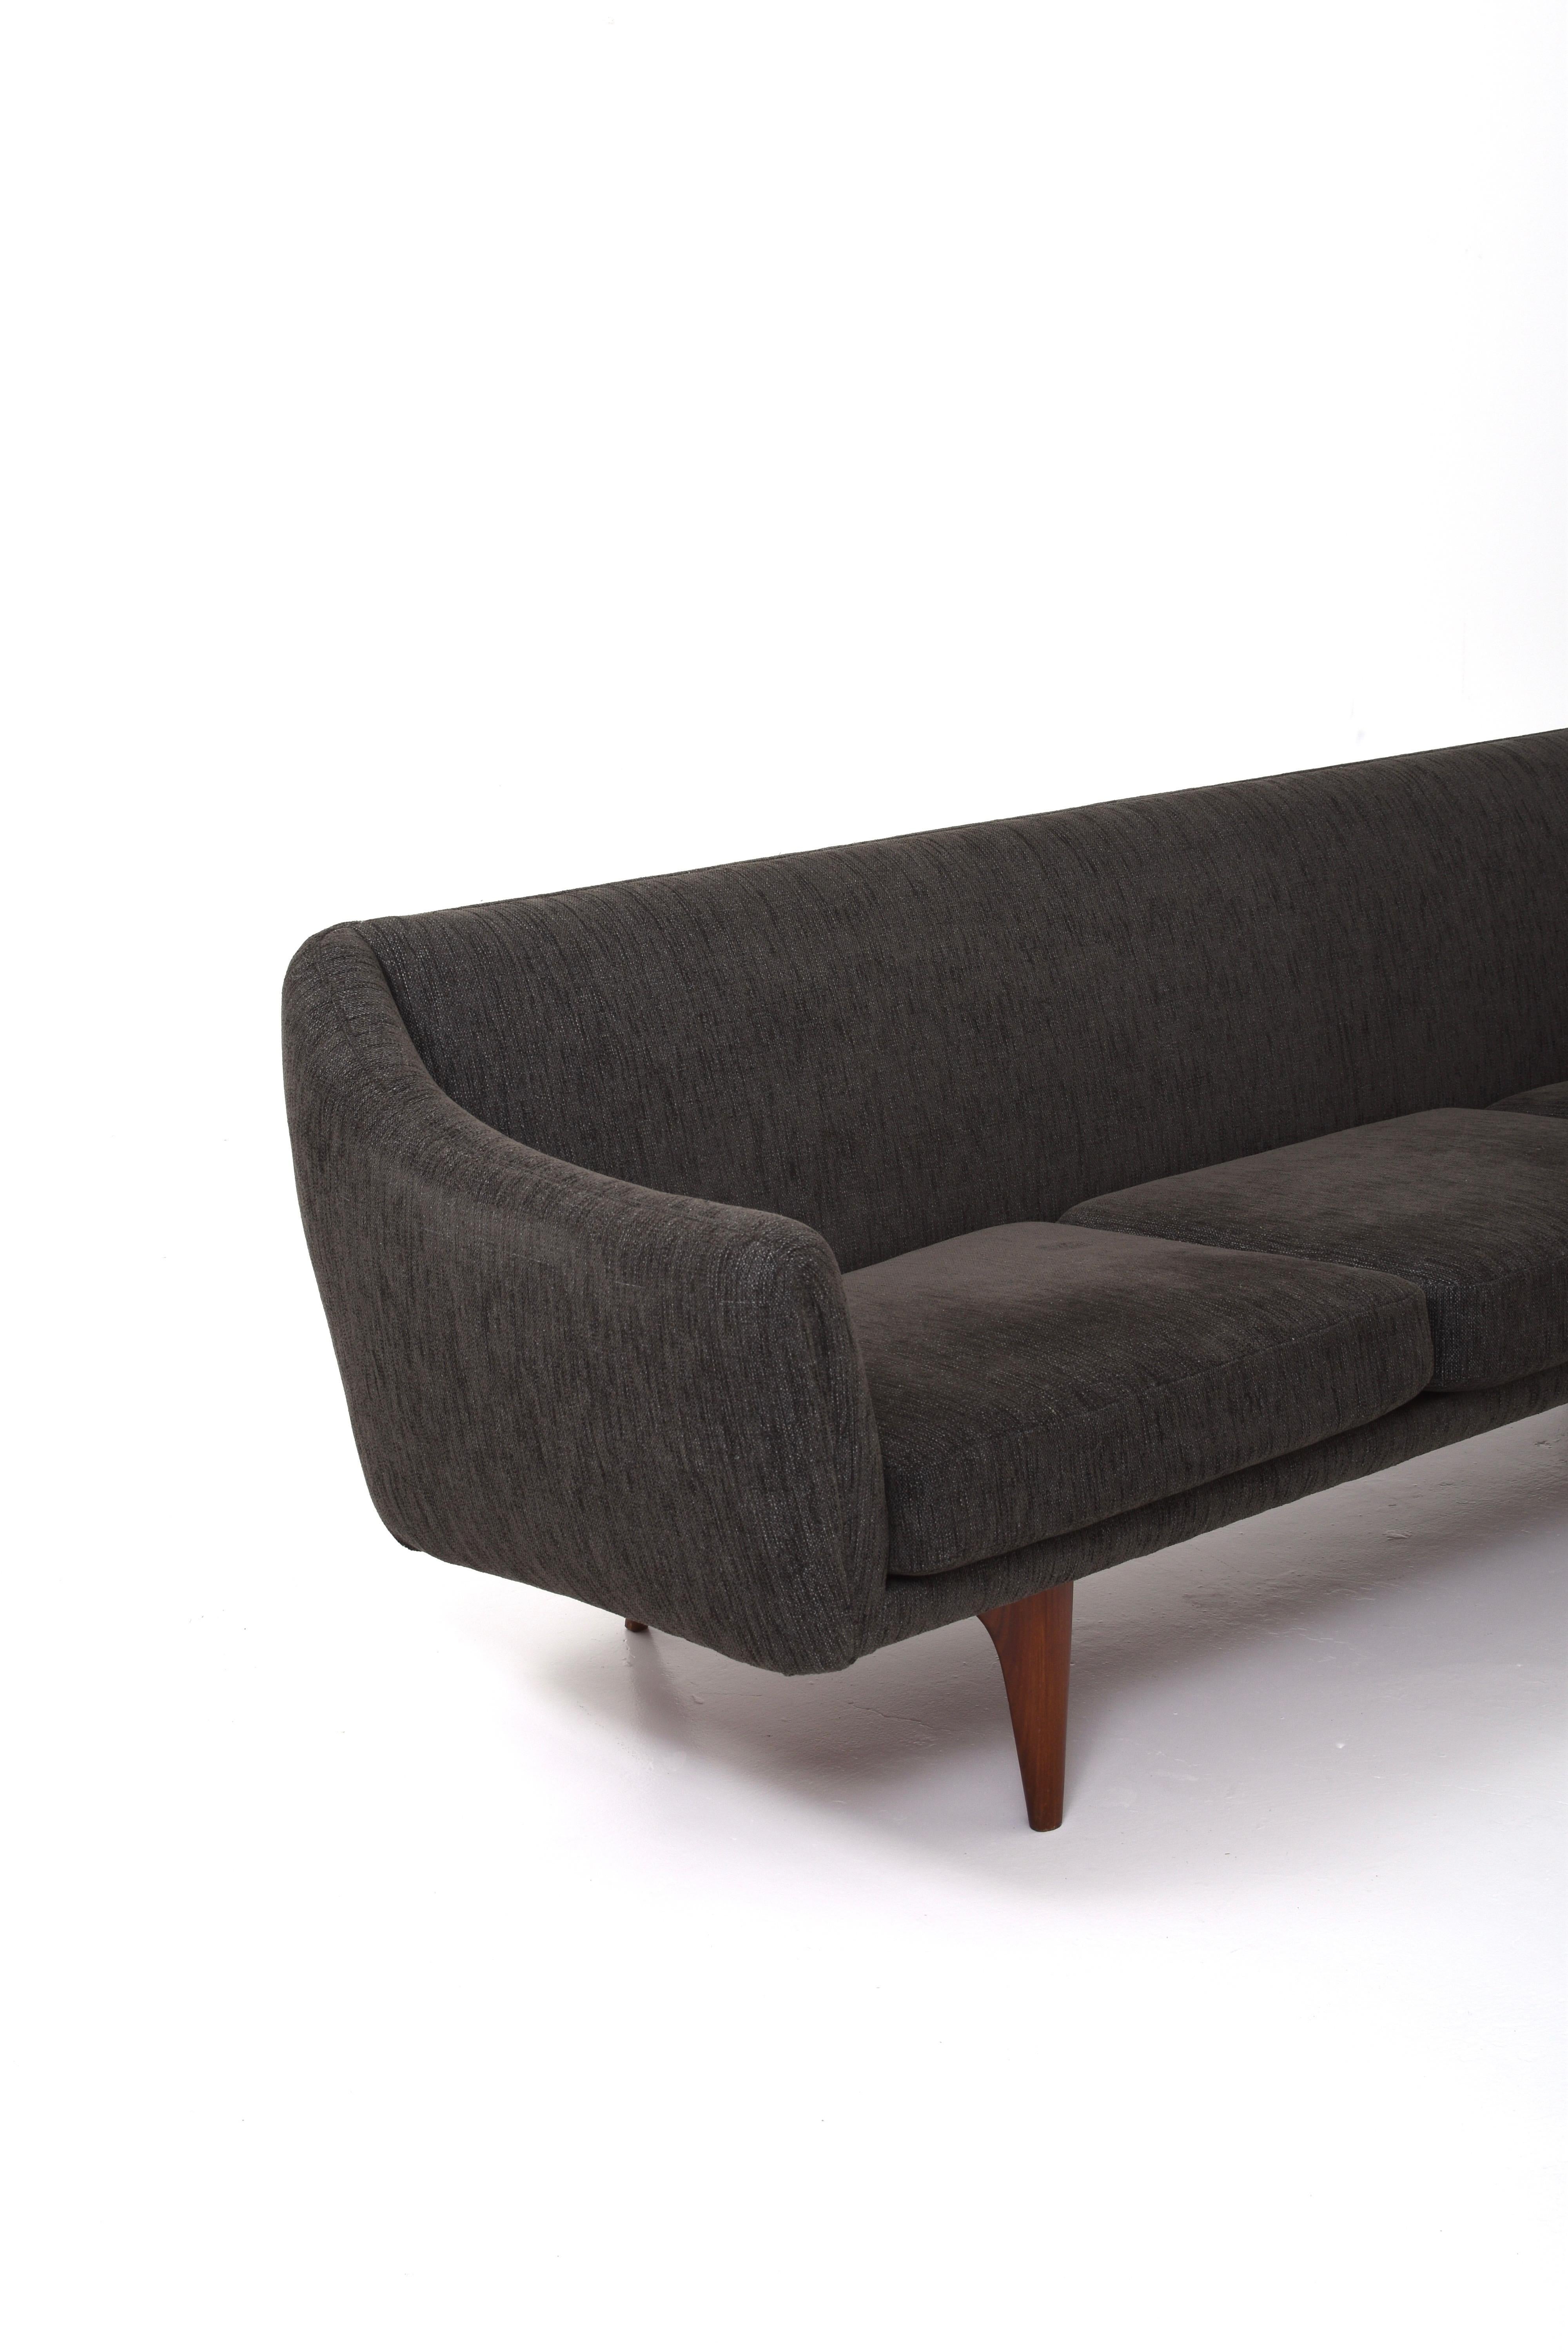  Sofa model Ml-140 by Illum Wikkelsø for A. Mikael Laursen & Søn 2